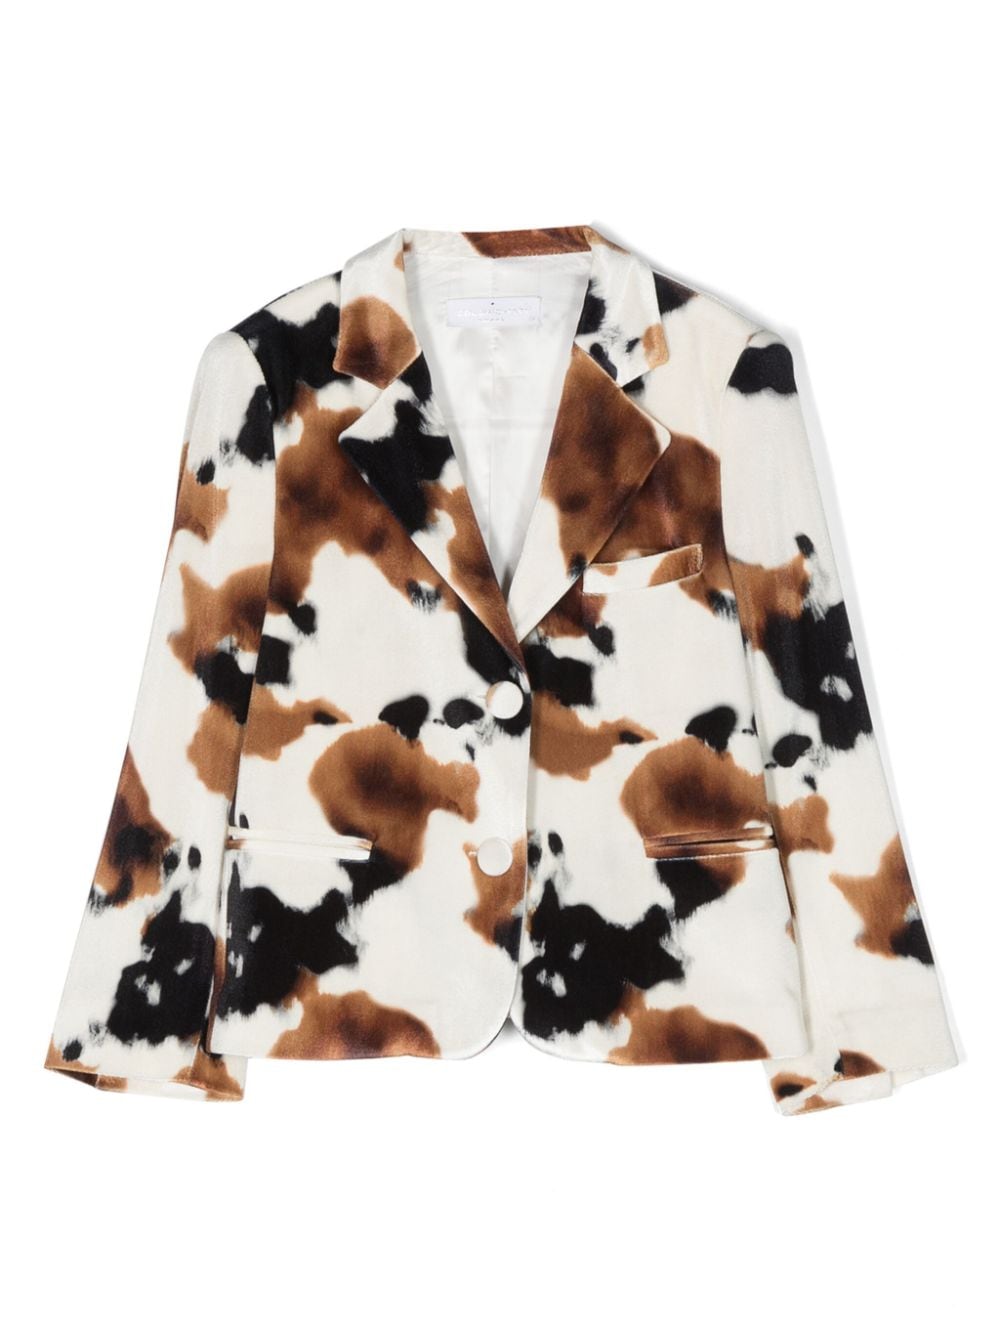 Colorichiari Kids' Cow-print Single-breasted Blazer In Neutrals